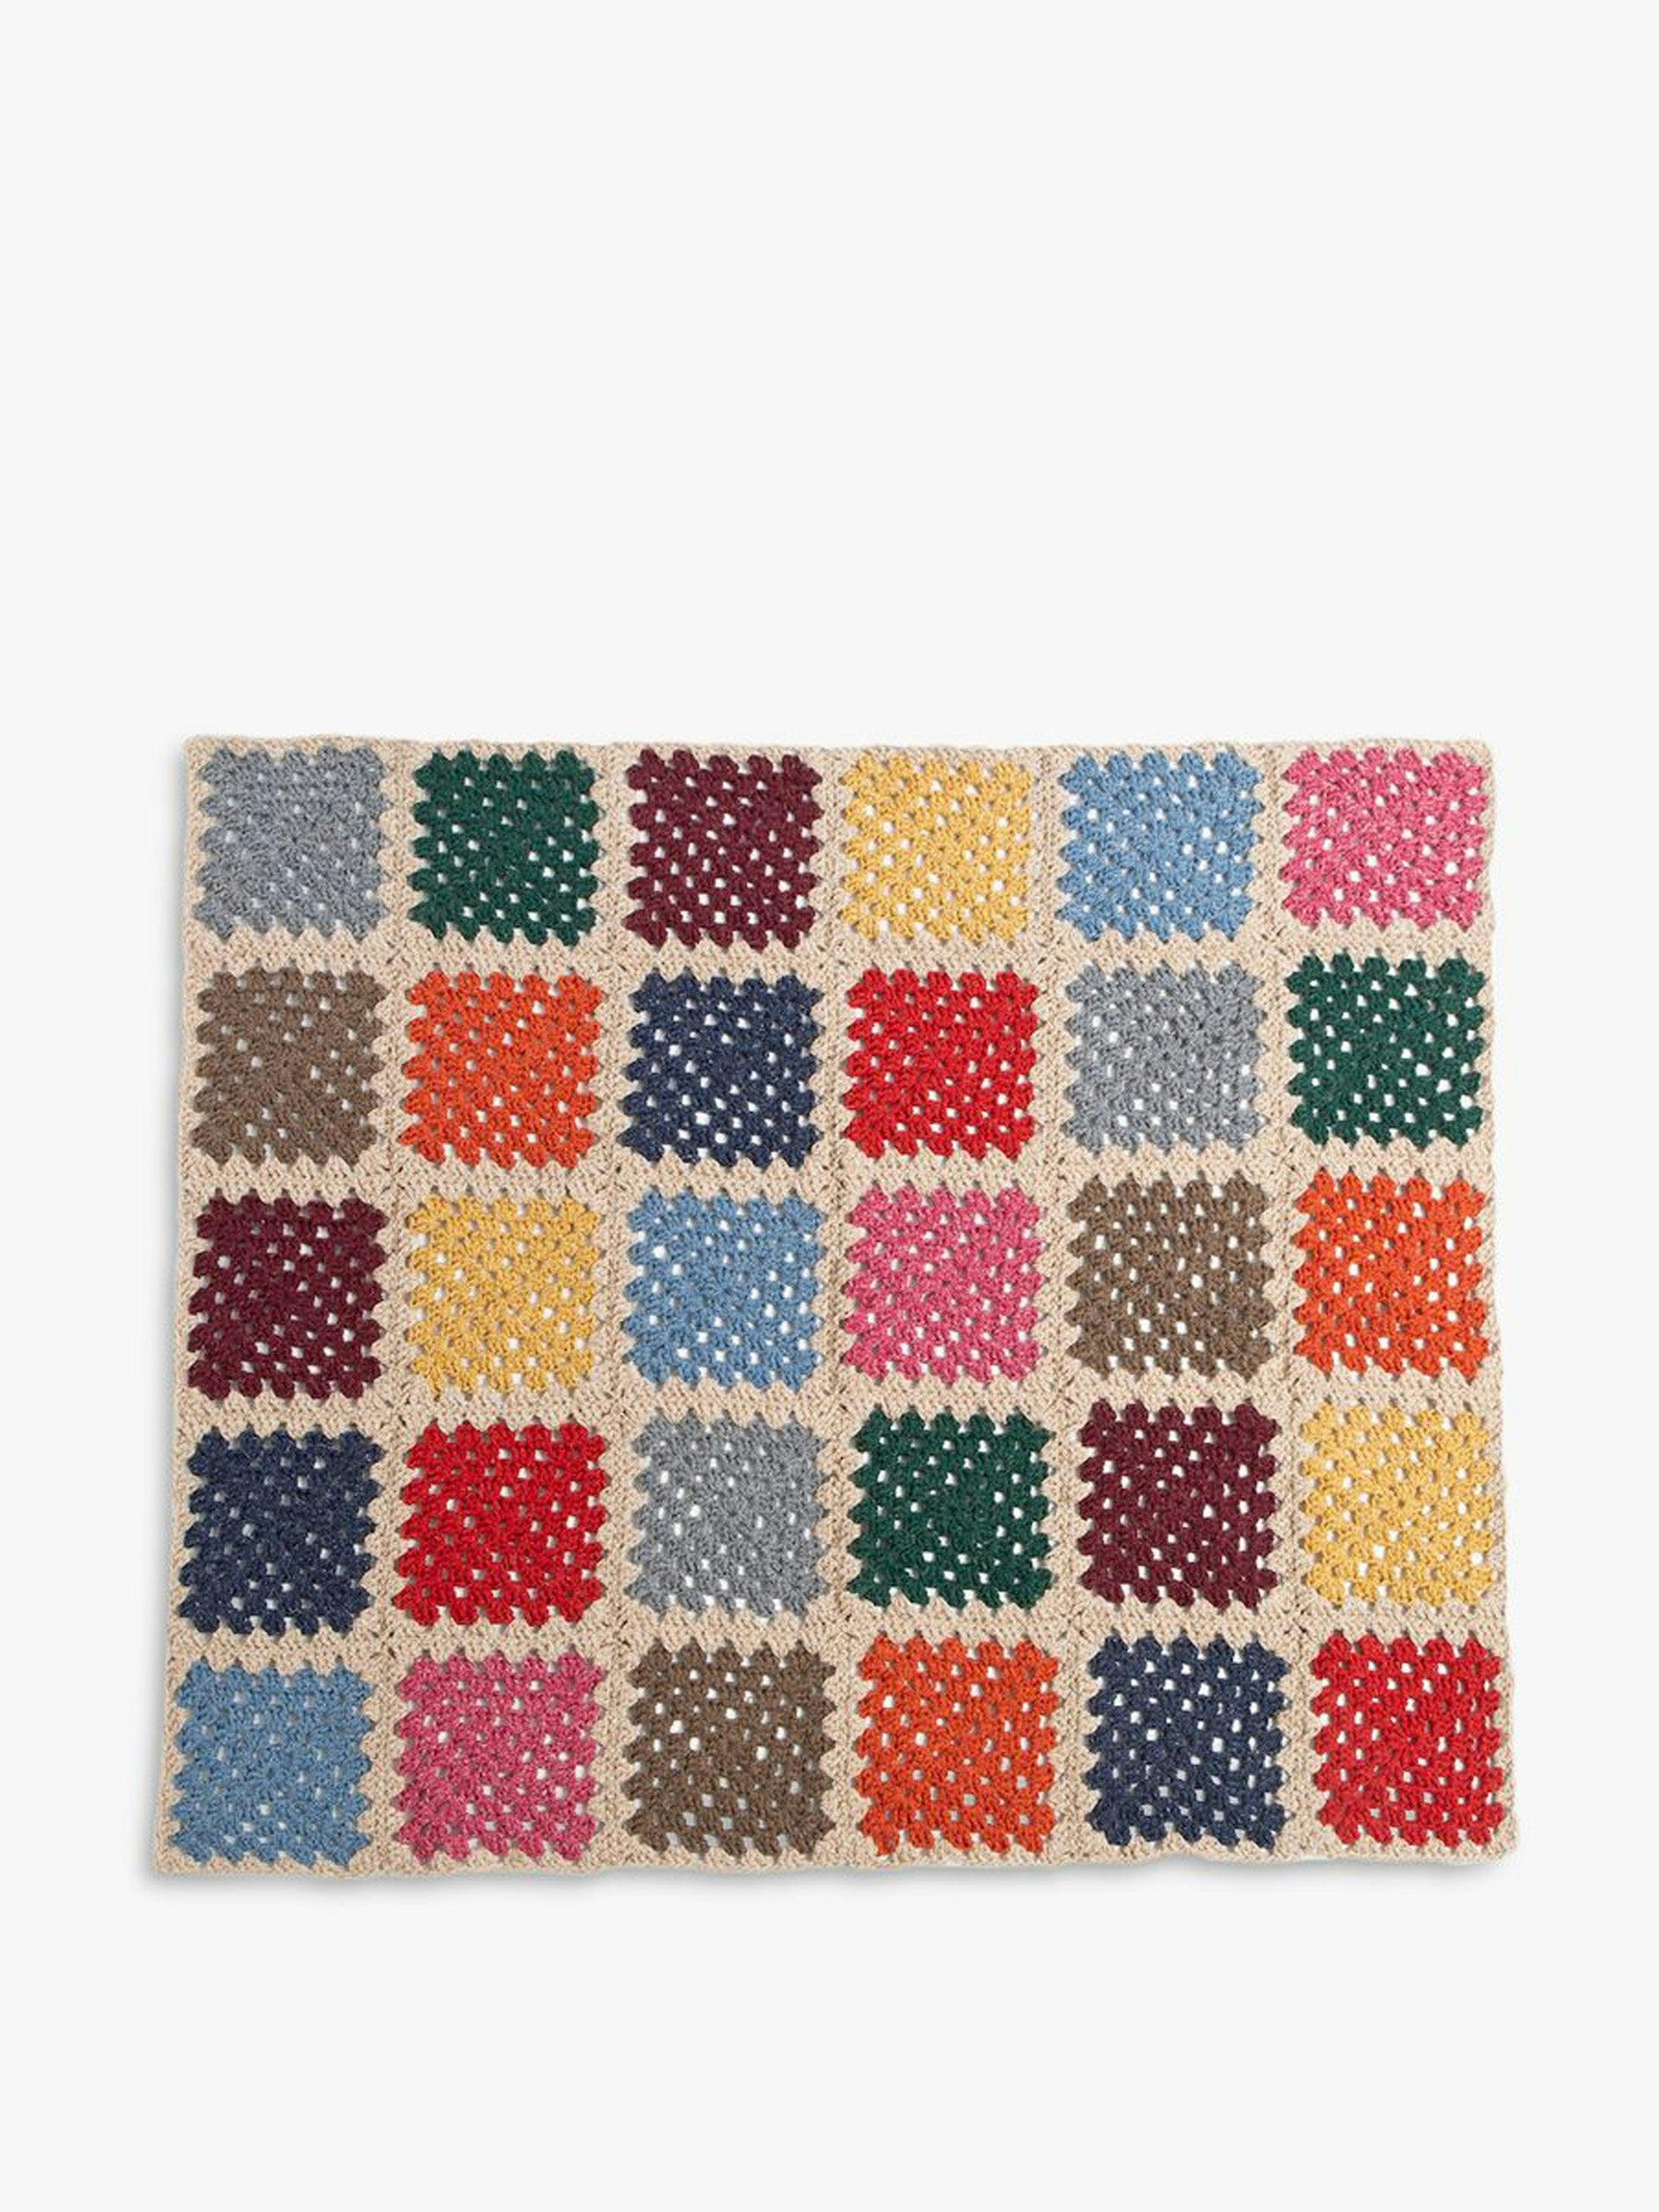 Multicoloured granny-squares blanket crochet kit